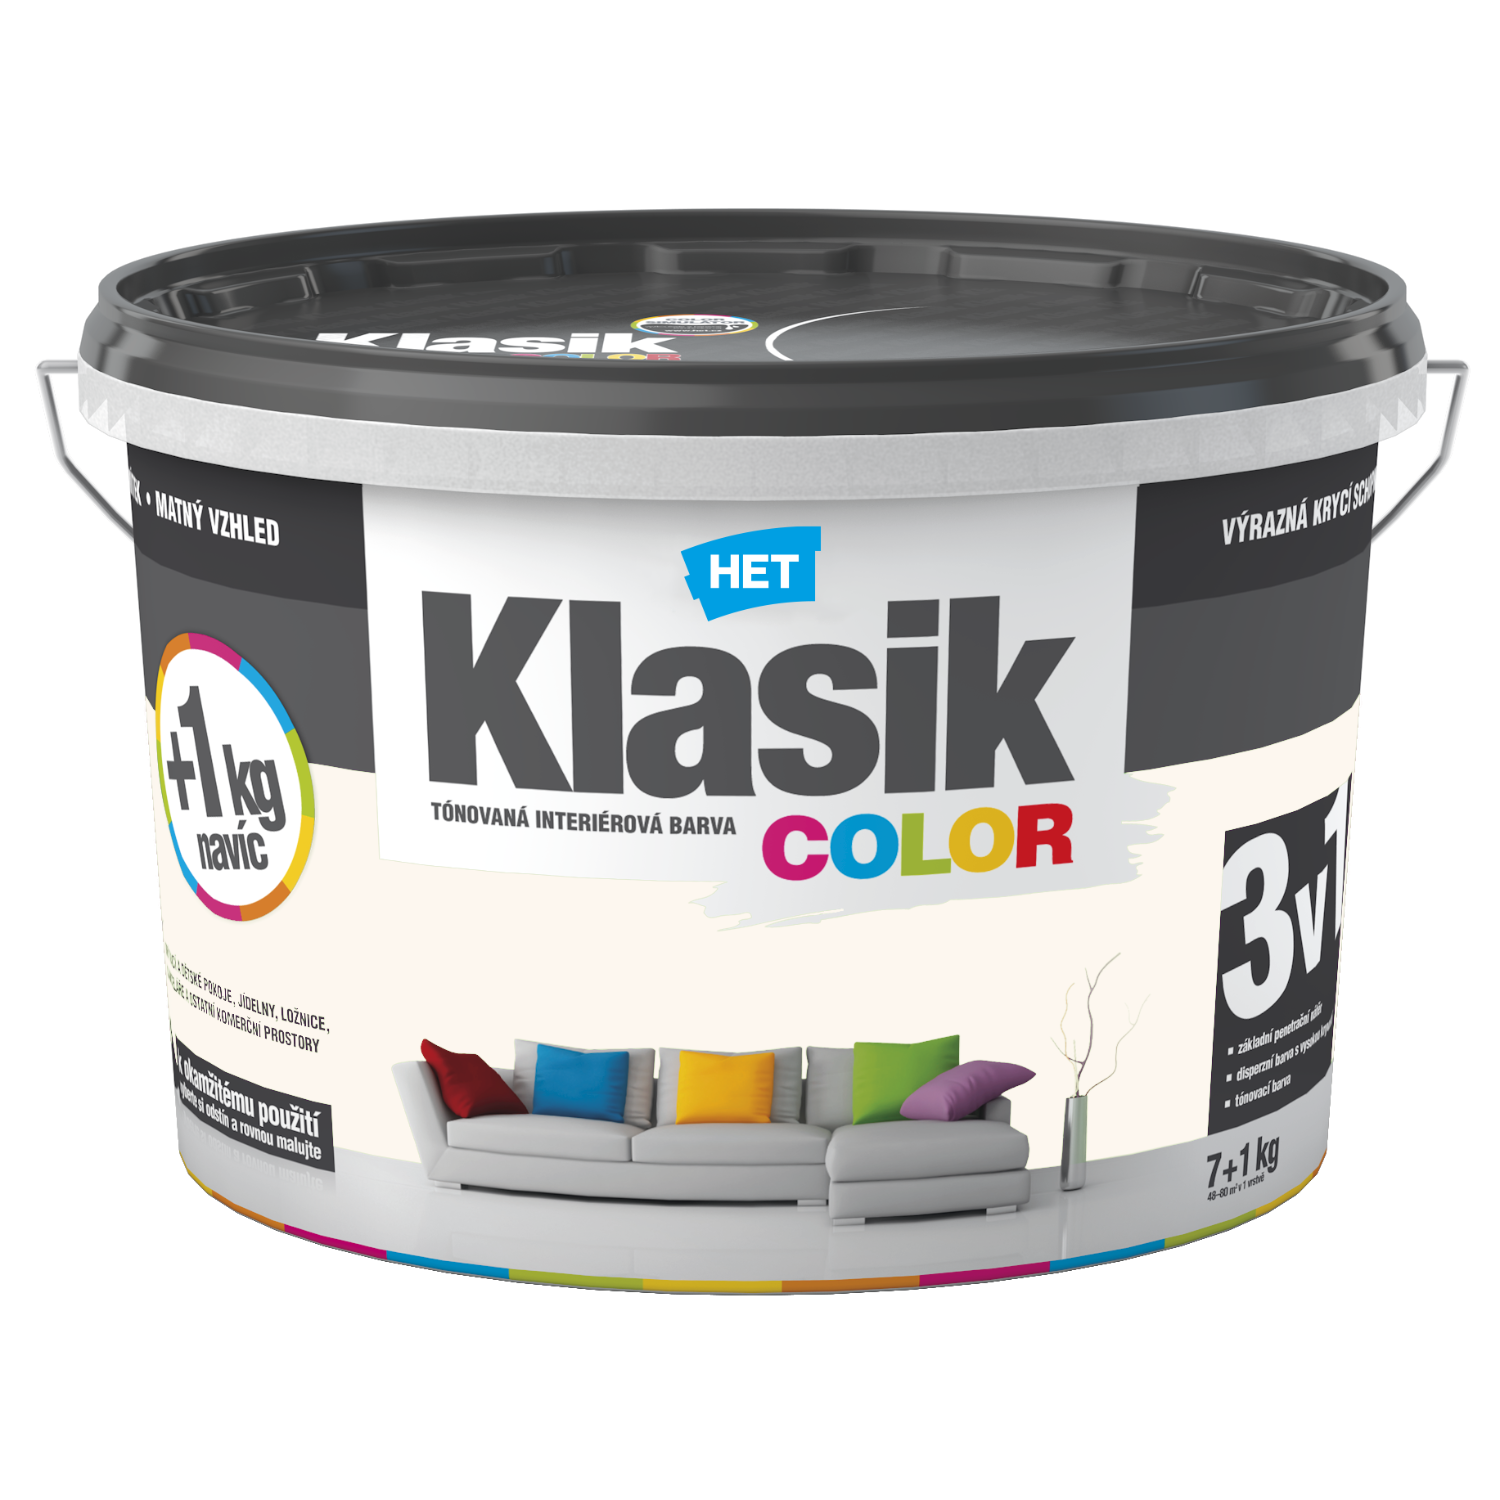 HET Klasik COLOR tónovaná interiérová akrylátová disperzná oteruvzdorná farba 7 kg + 1 kg zdarma, KC0218 - béžový pieskový